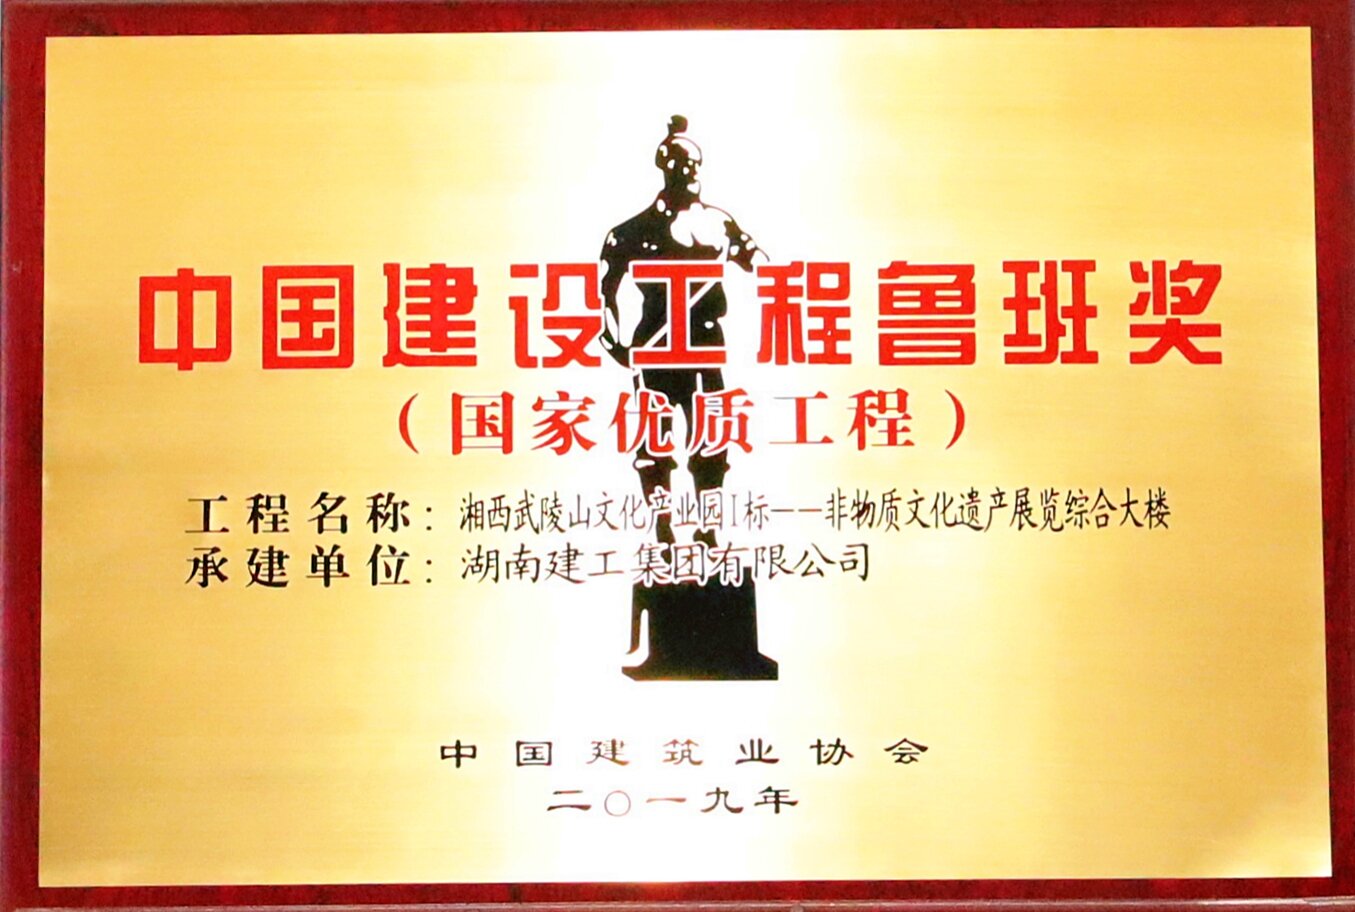 中国建设工程鲁班奖